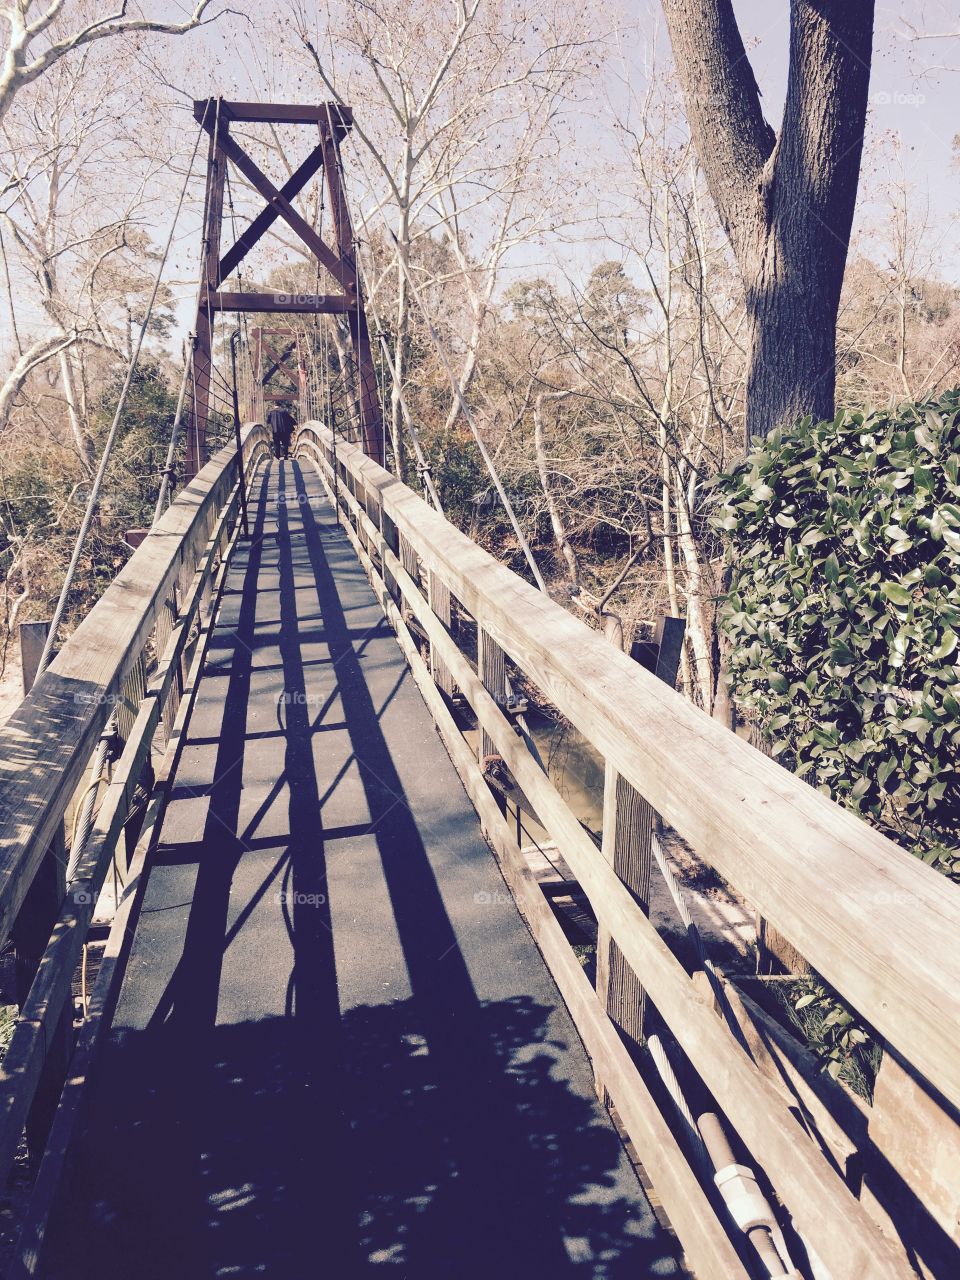 Across the bridge . Bridge into the woods